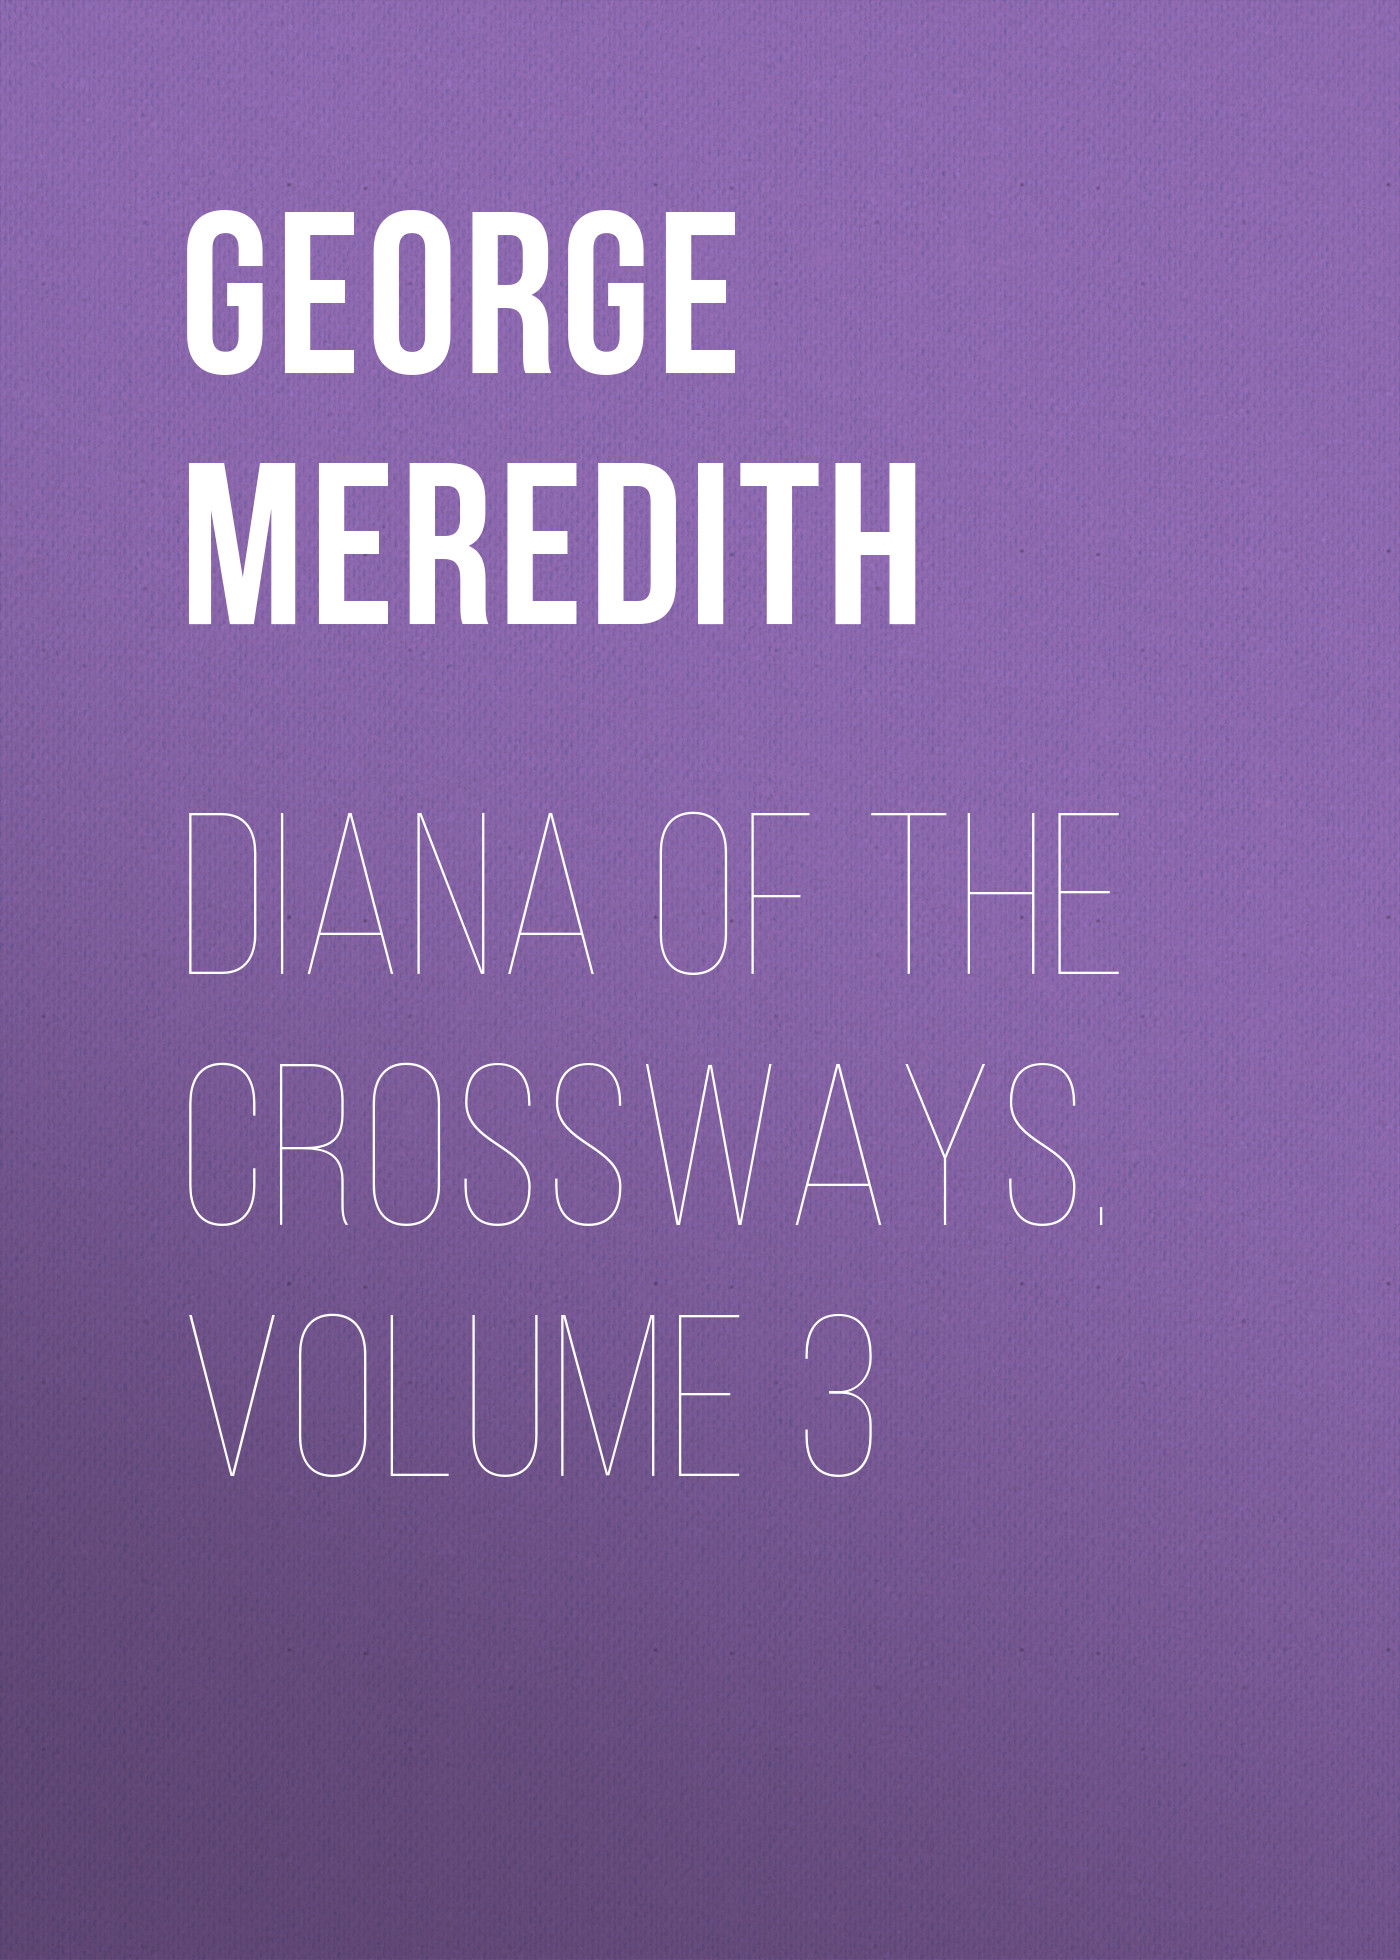 Книга Diana of the Crossways. Volume 3 из серии , созданная George Meredith, может относится к жанру Зарубежная классика, Литература 19 века, Зарубежная старинная литература. Стоимость электронной книги Diana of the Crossways. Volume 3 с идентификатором 36096341 составляет 0 руб.